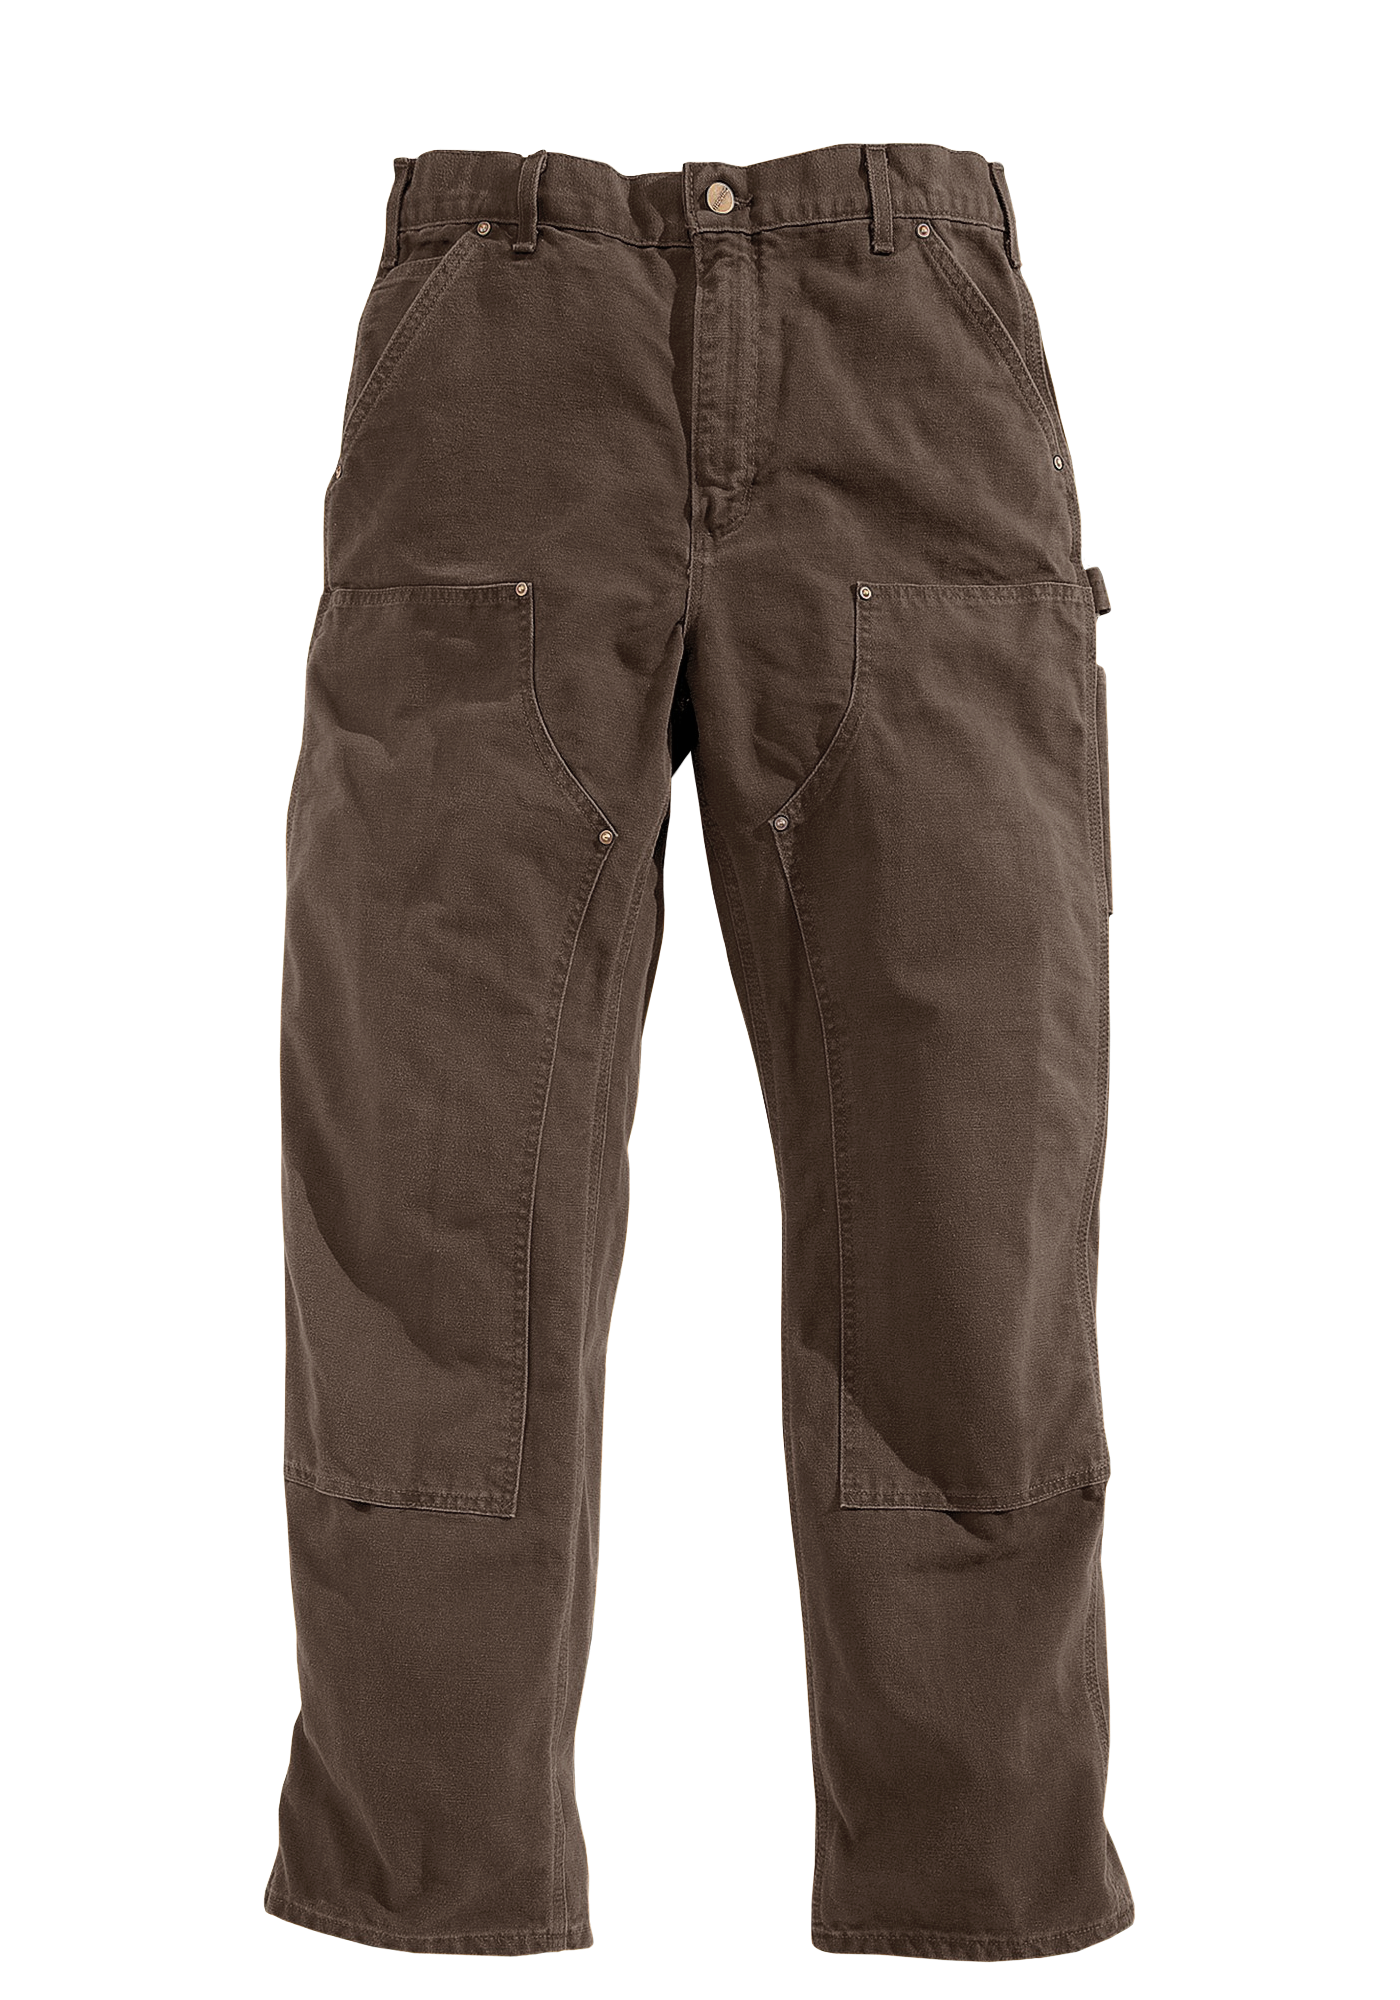 Carhartt Men's Relaxed Fit Carhartt Brown Work Pants (30 X 34)